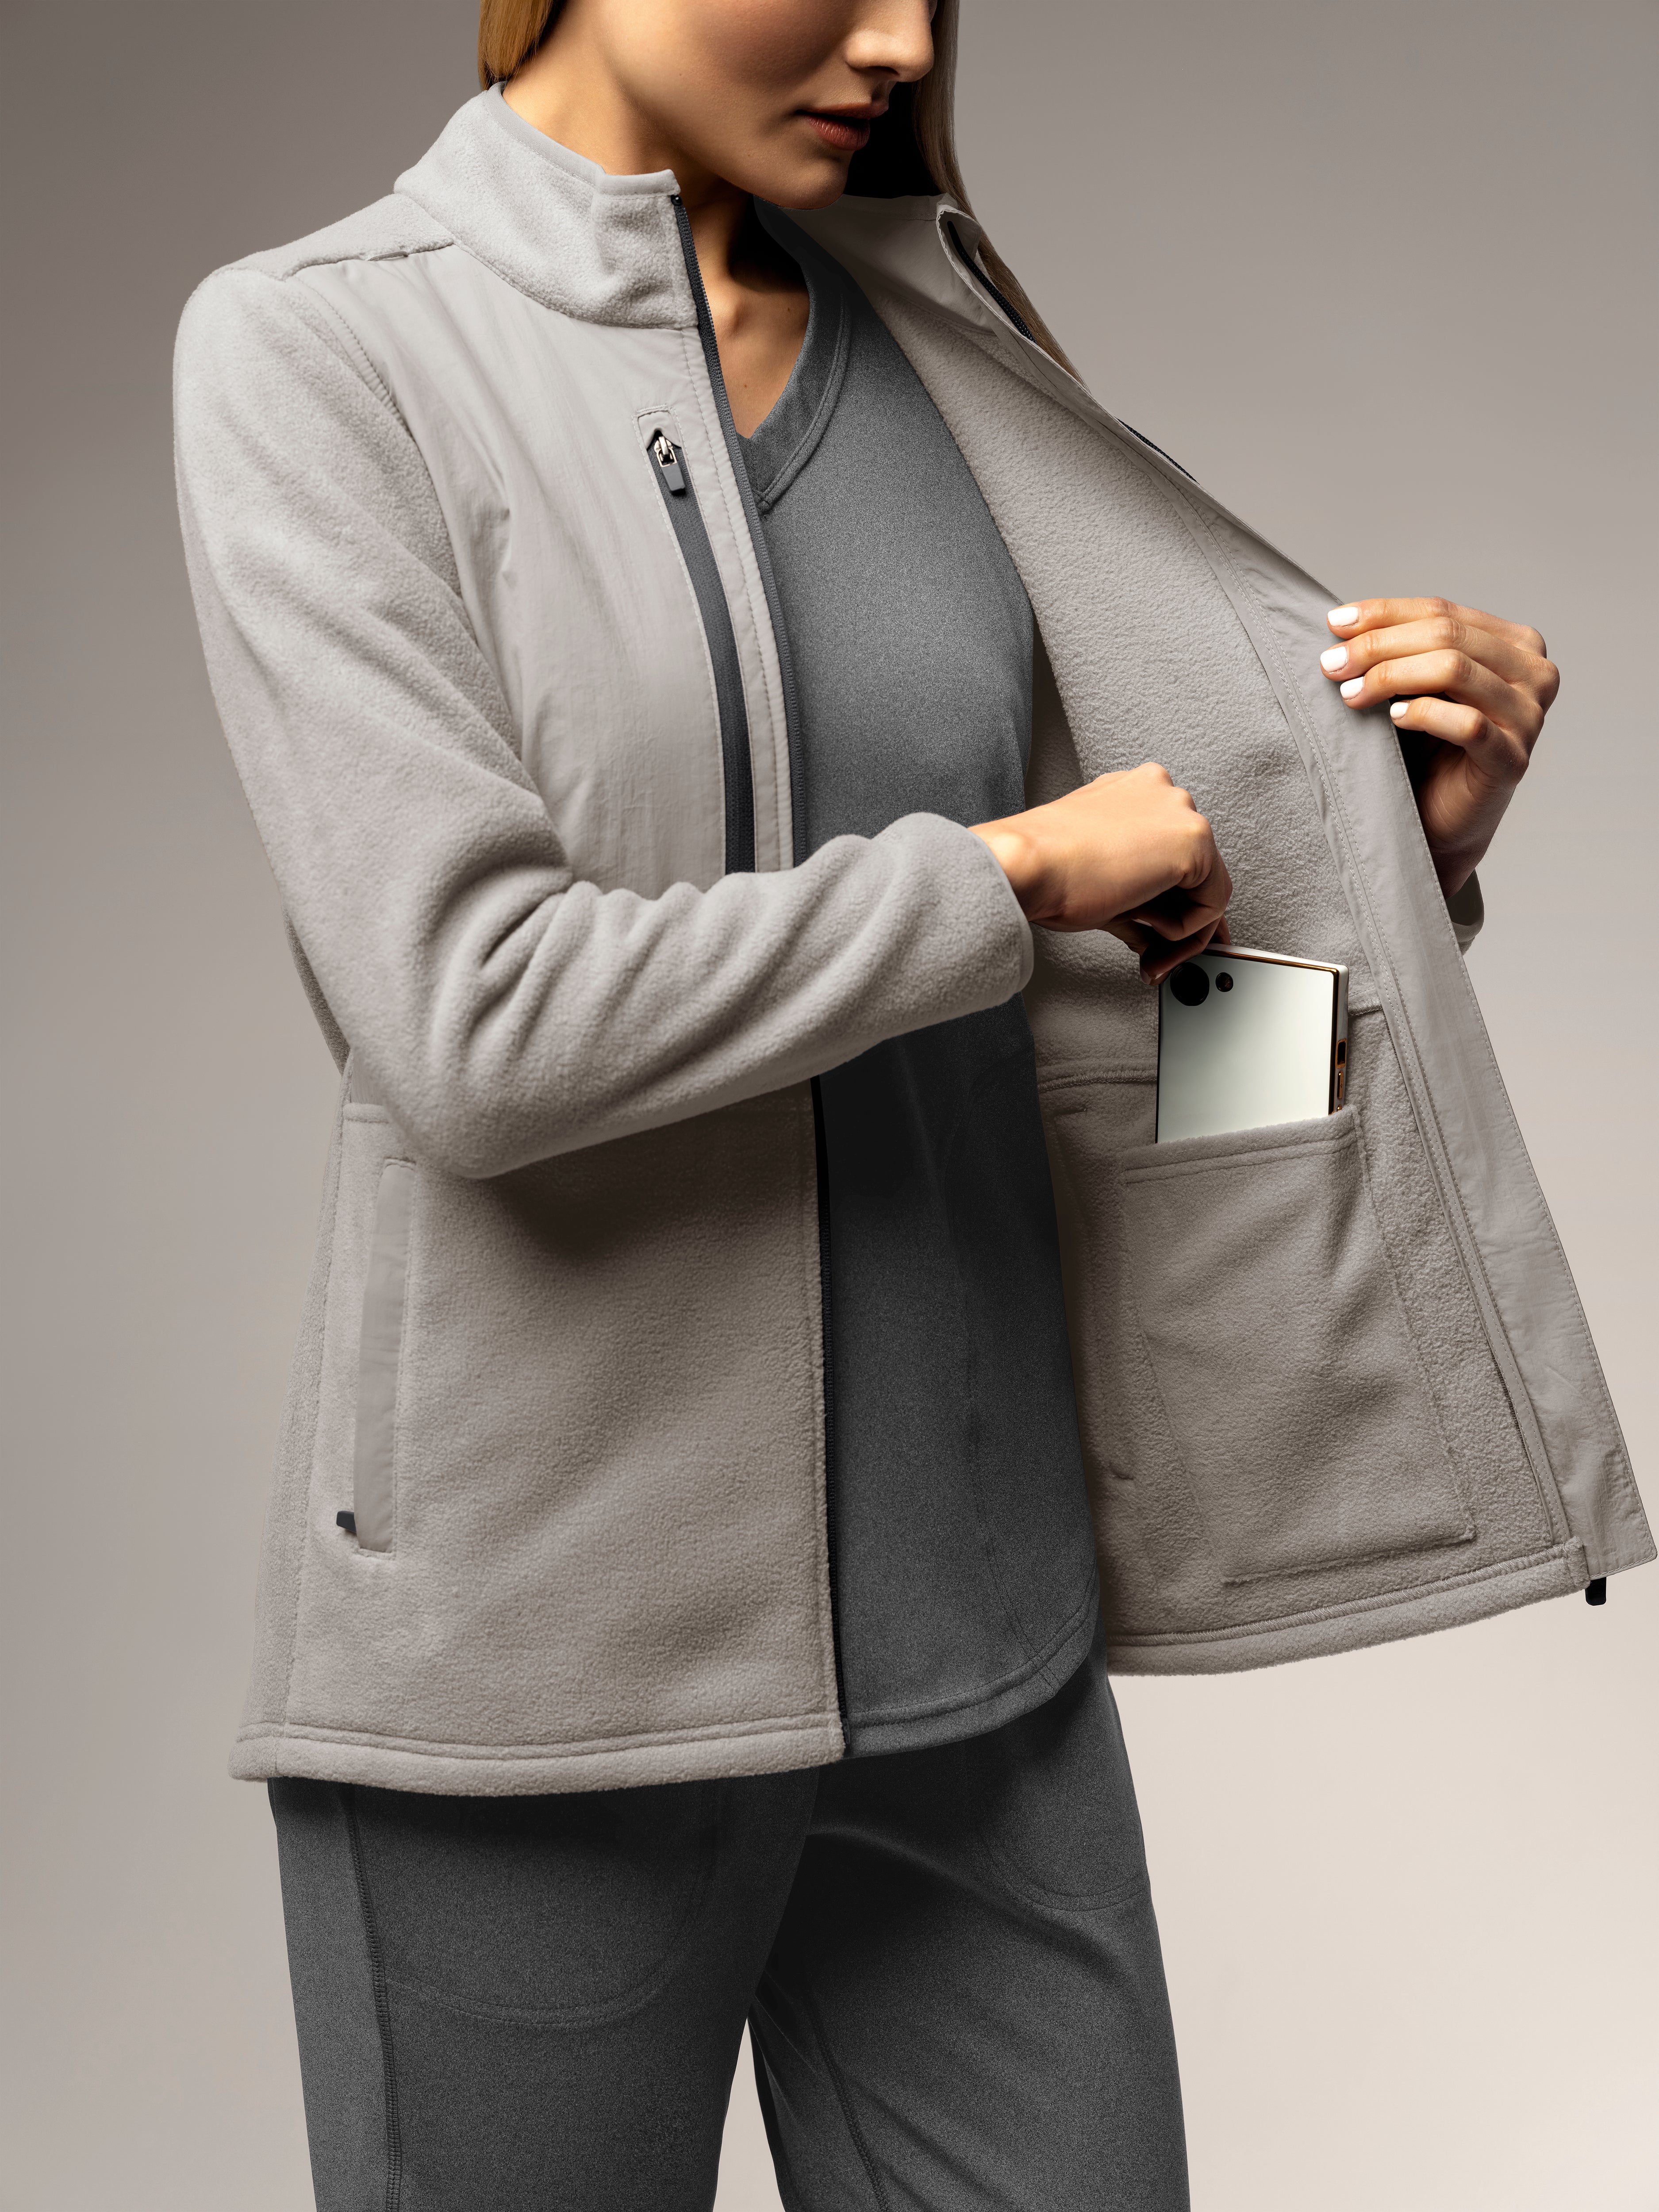 Women's Micro Fleece Zip Jacket